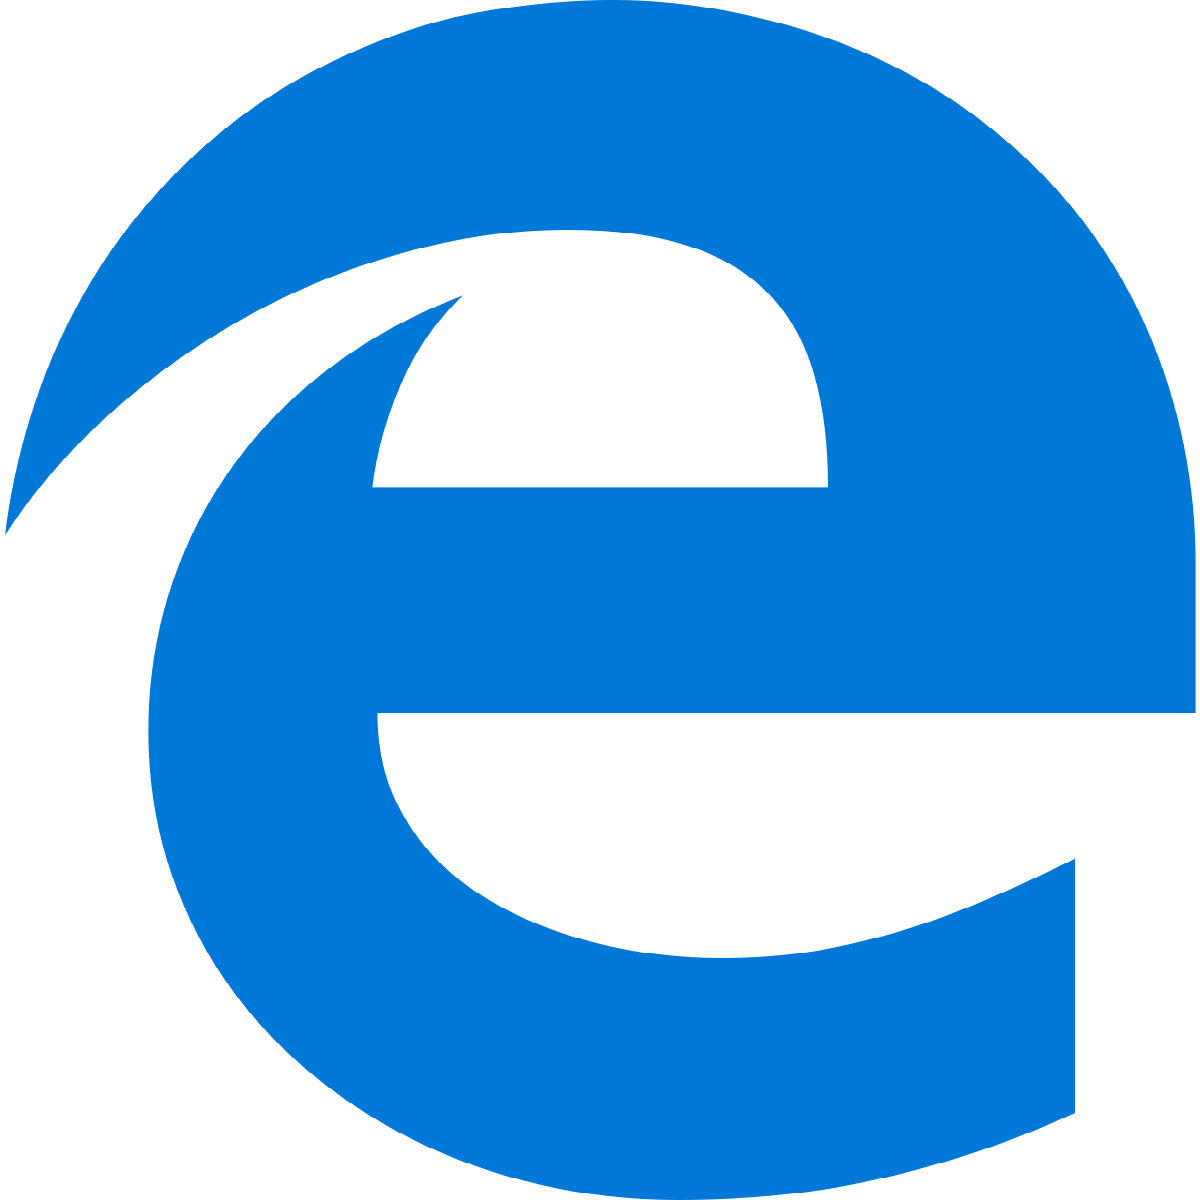 chromium edge logo